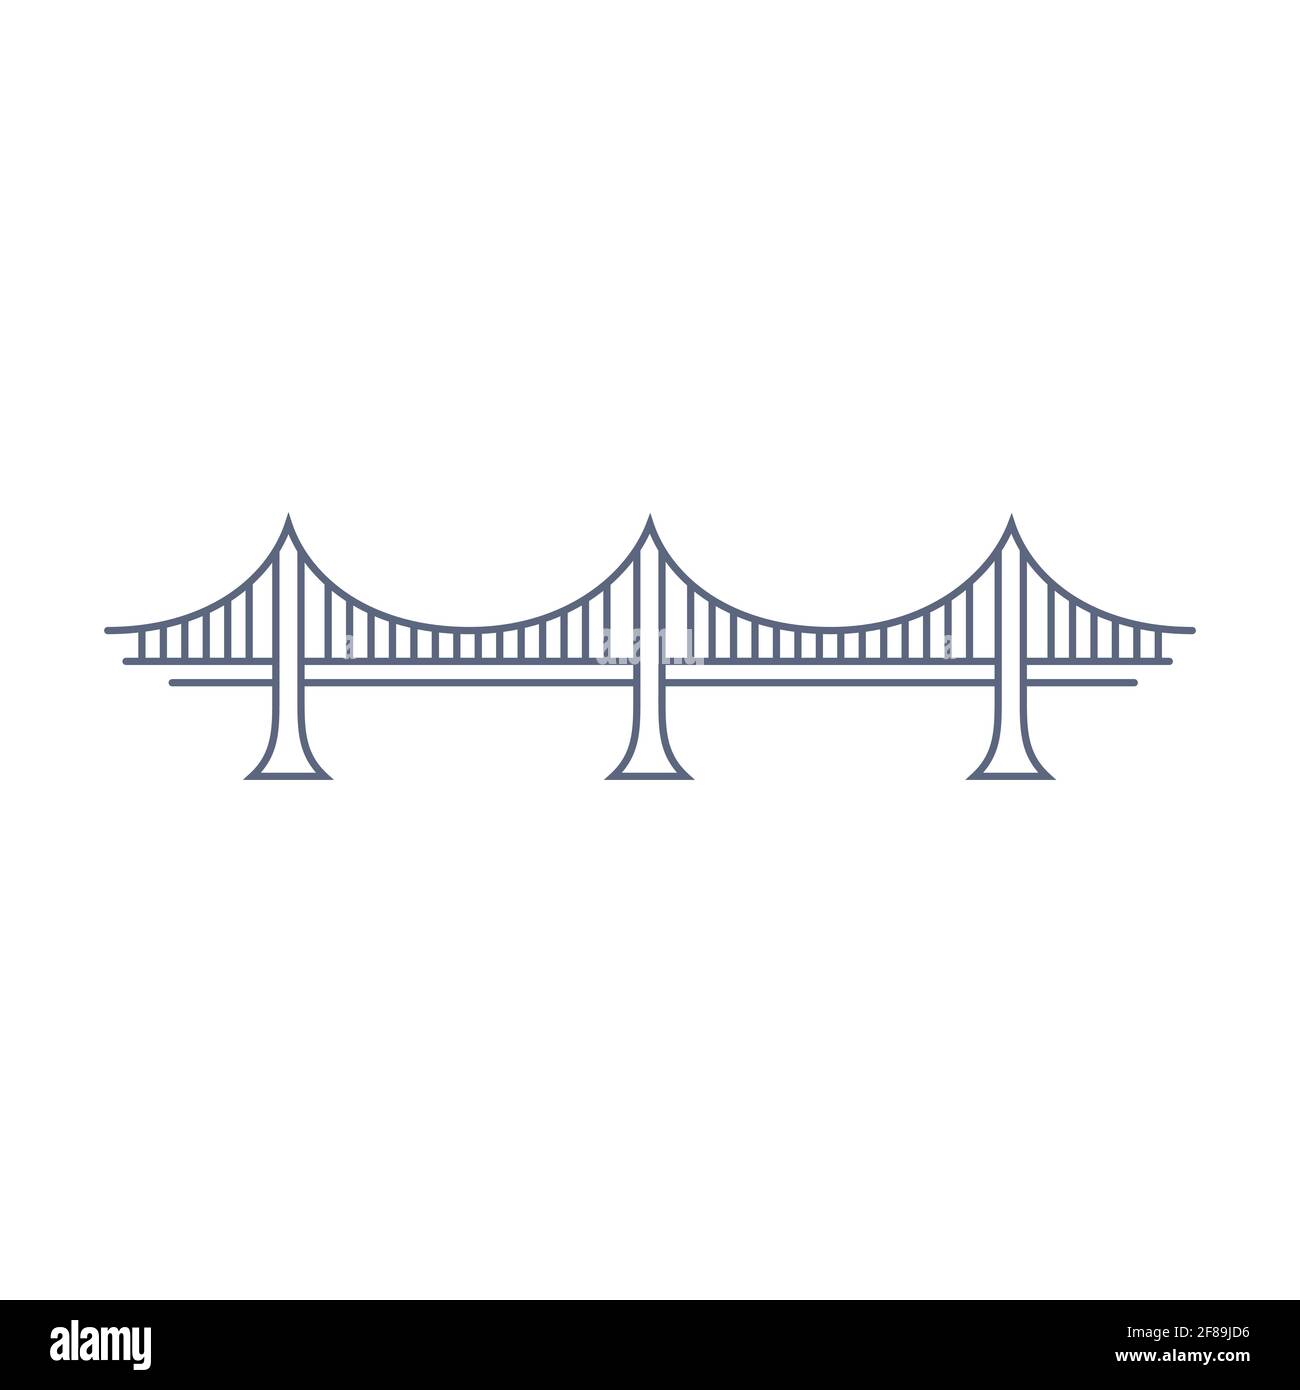 Icona del vettore della linea di ponte - pittogramma del ponte di sospensione semplice in stile lineare su sfondo bianco. Illustrazione vettoriale Illustrazione Vettoriale